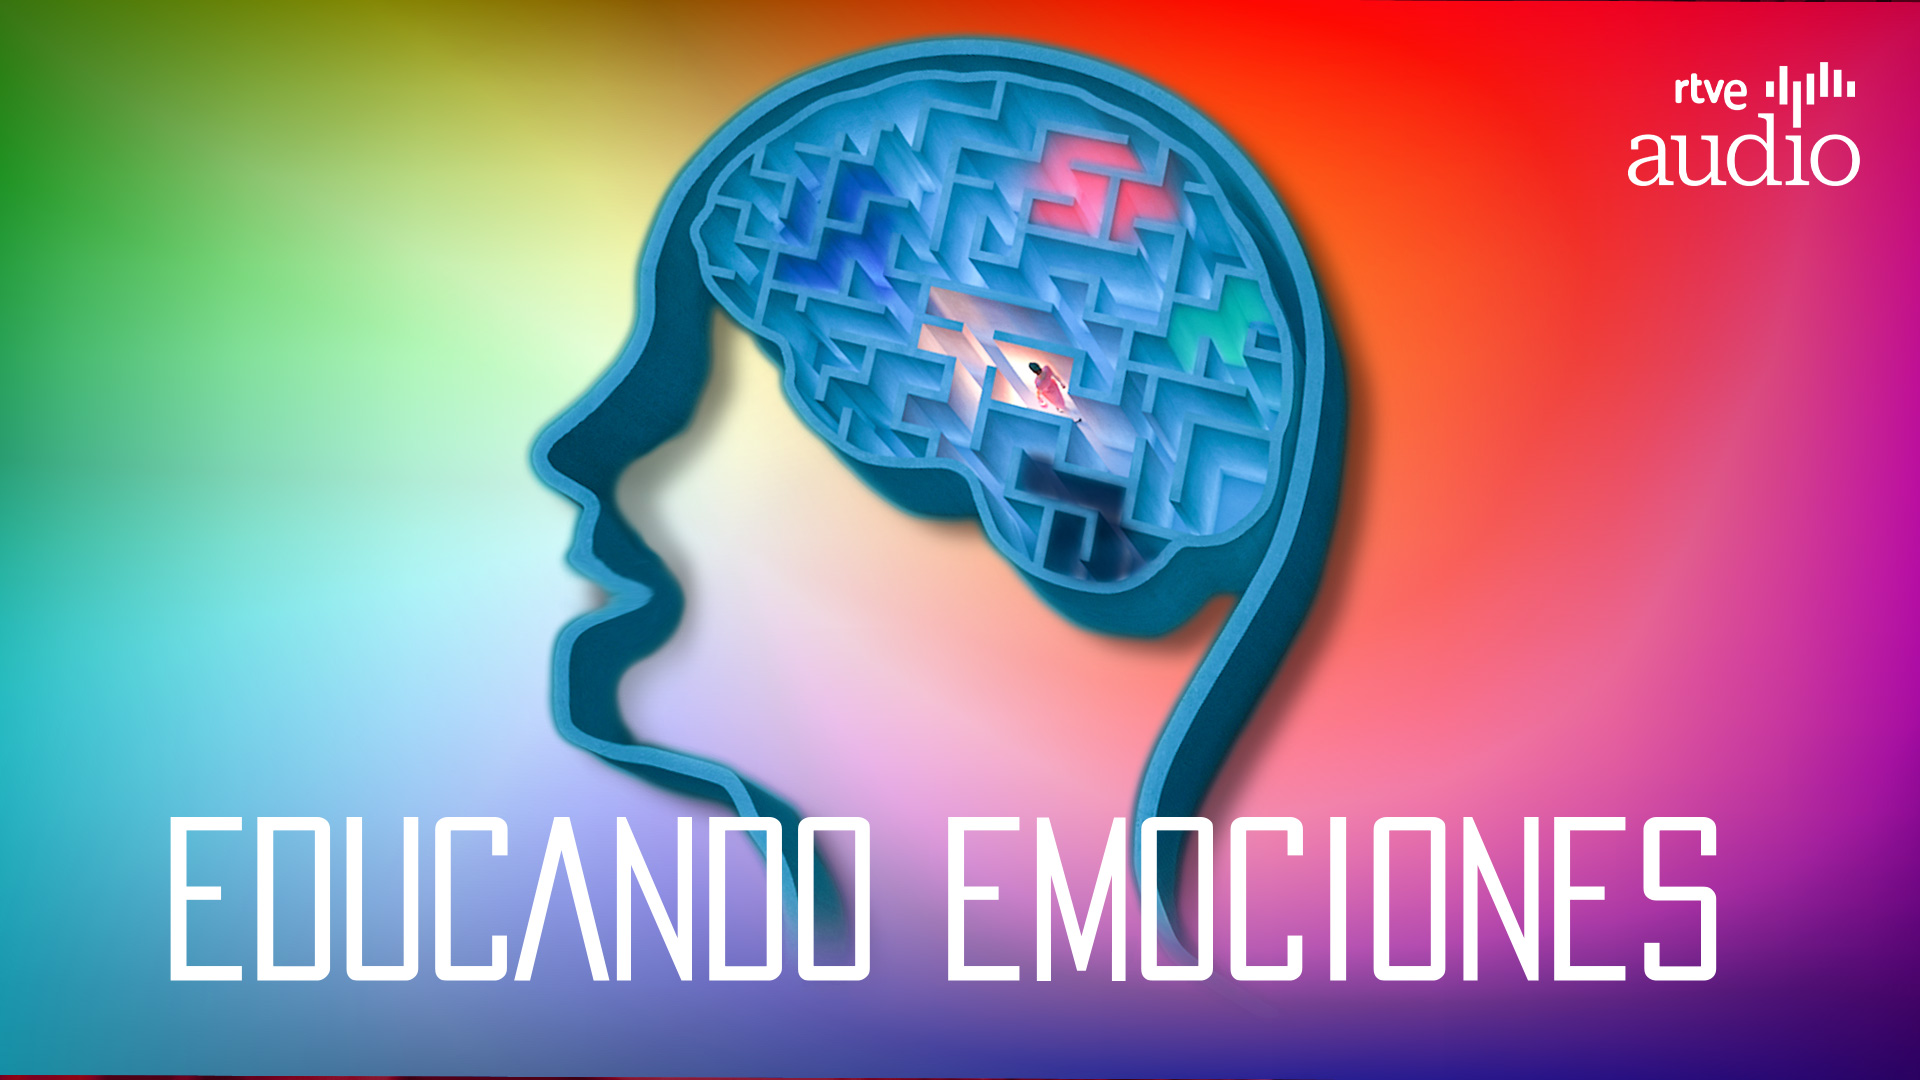 Educando emociones', un pódcast para entender lo que pasa en nuestra cabeza